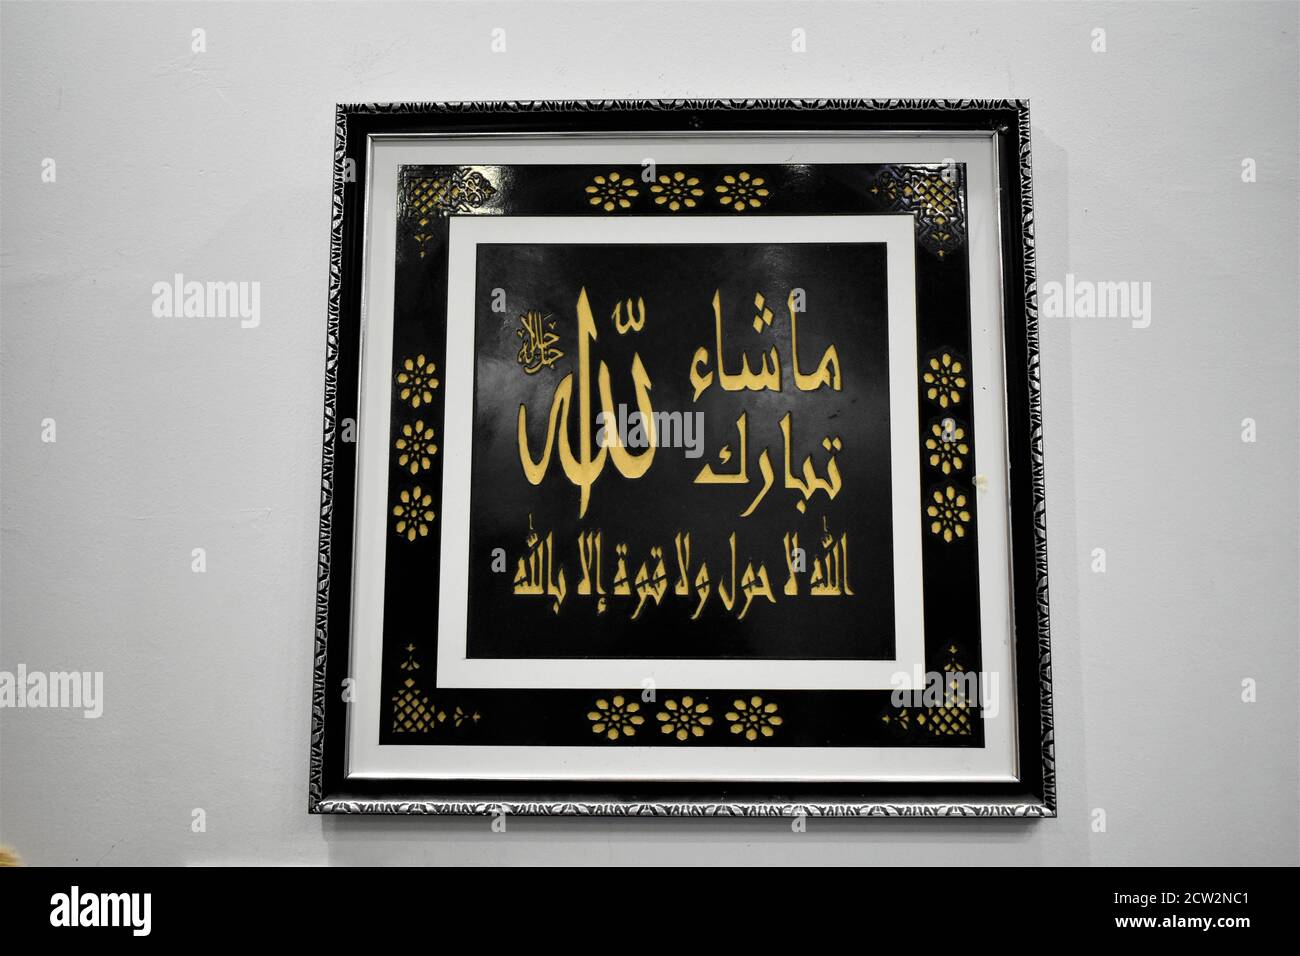 Art traditionnel arabe de calligraphie dans le cadre. Muscat, Oman Banque D'Images